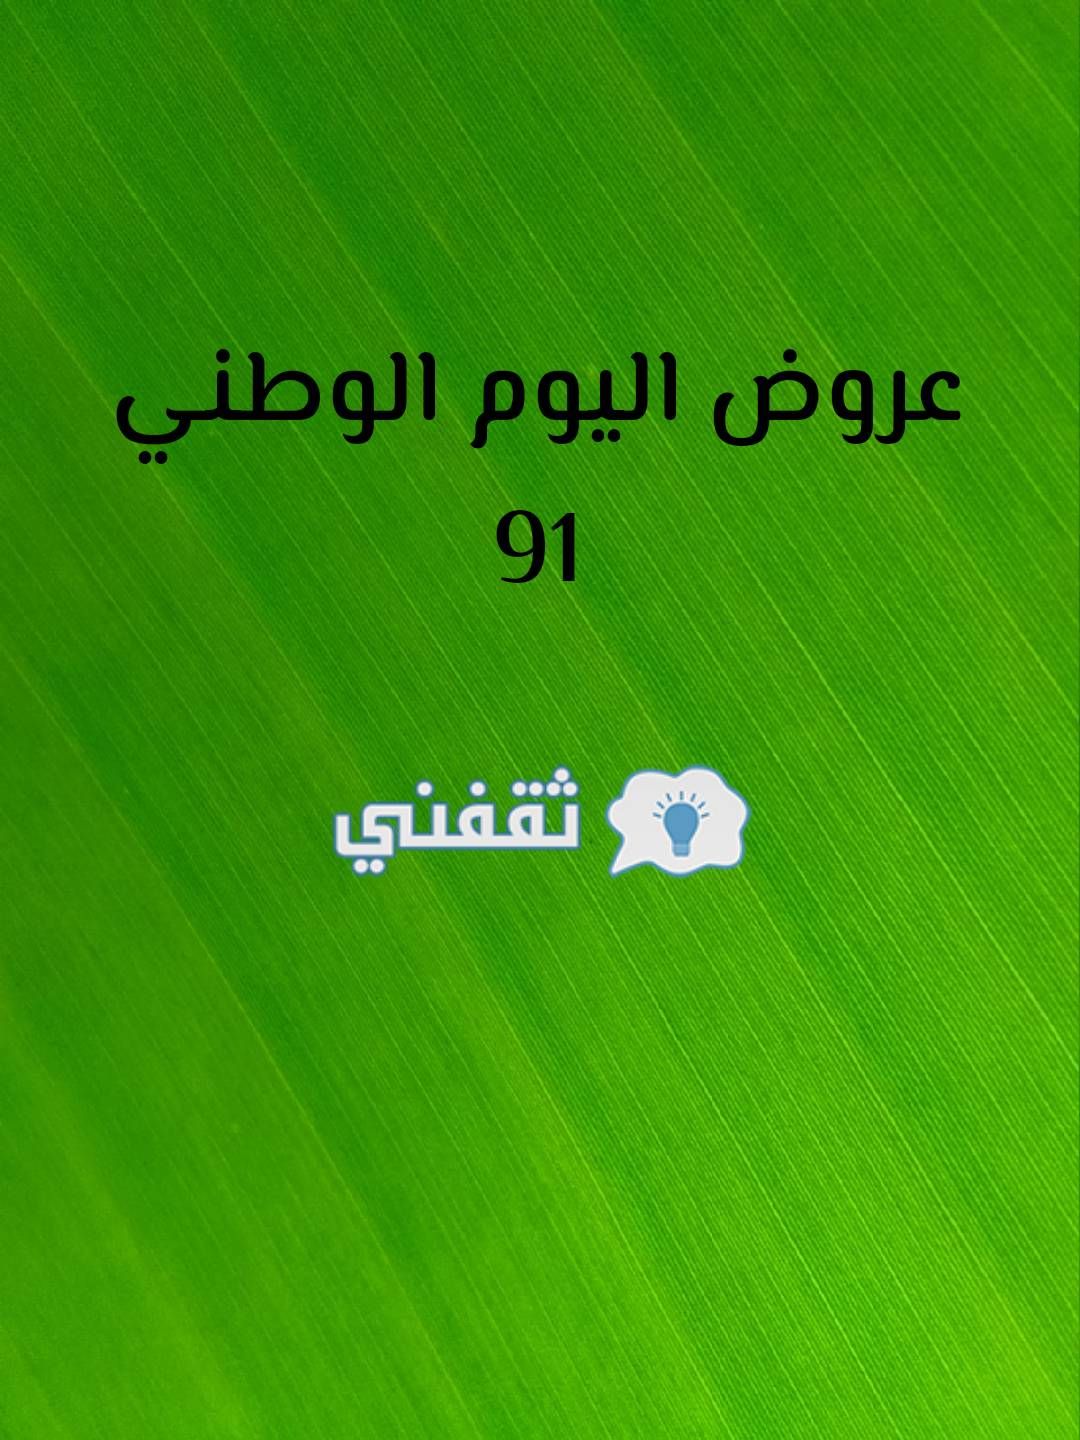 91 السعودية اليوم الوطني عروض الخطوط عروض اليوم